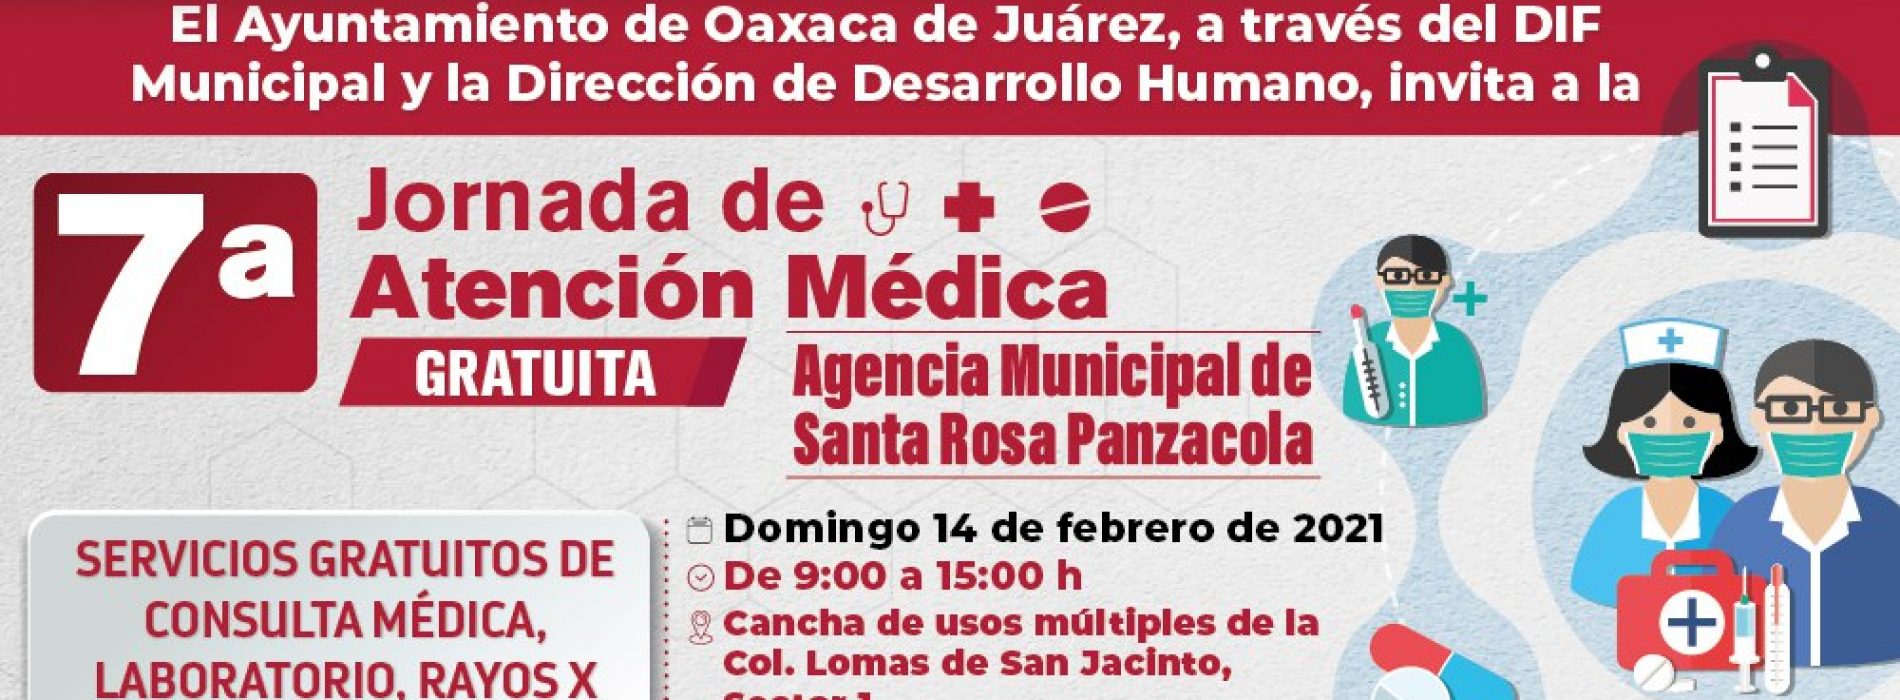 Acercará Ayuntamiento Jornada de Atención Médica Gratuita a Santa Rosa Panzacola